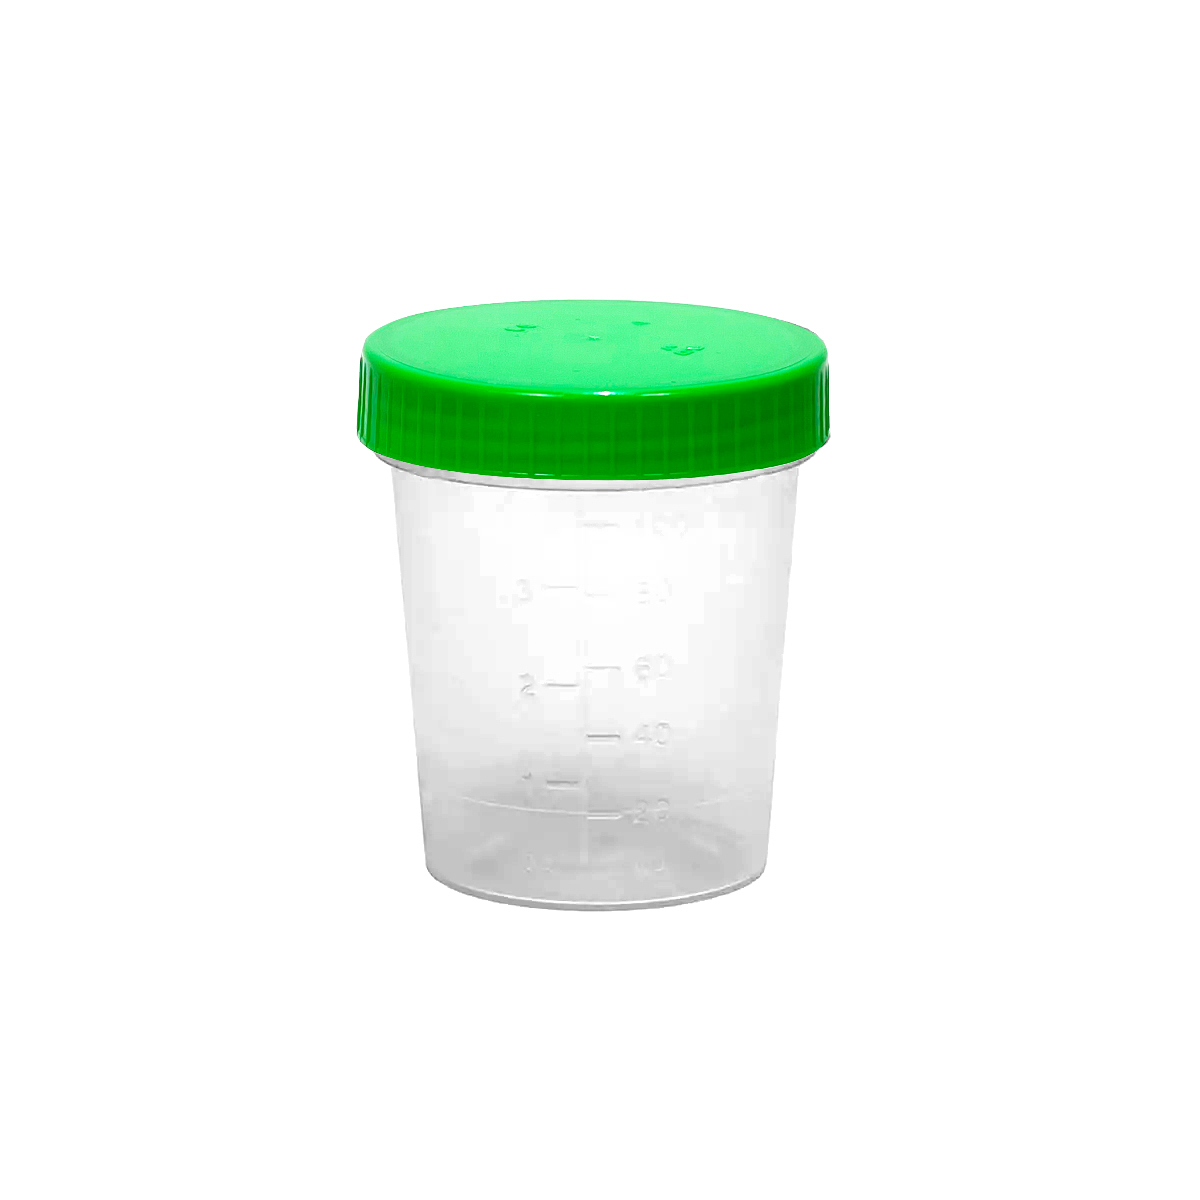 Urinsammelbehälter mit Schraubdeckel, 100ml, transparent mit Deckel (grün), Beutel mit 100 Stück [AMPRI]